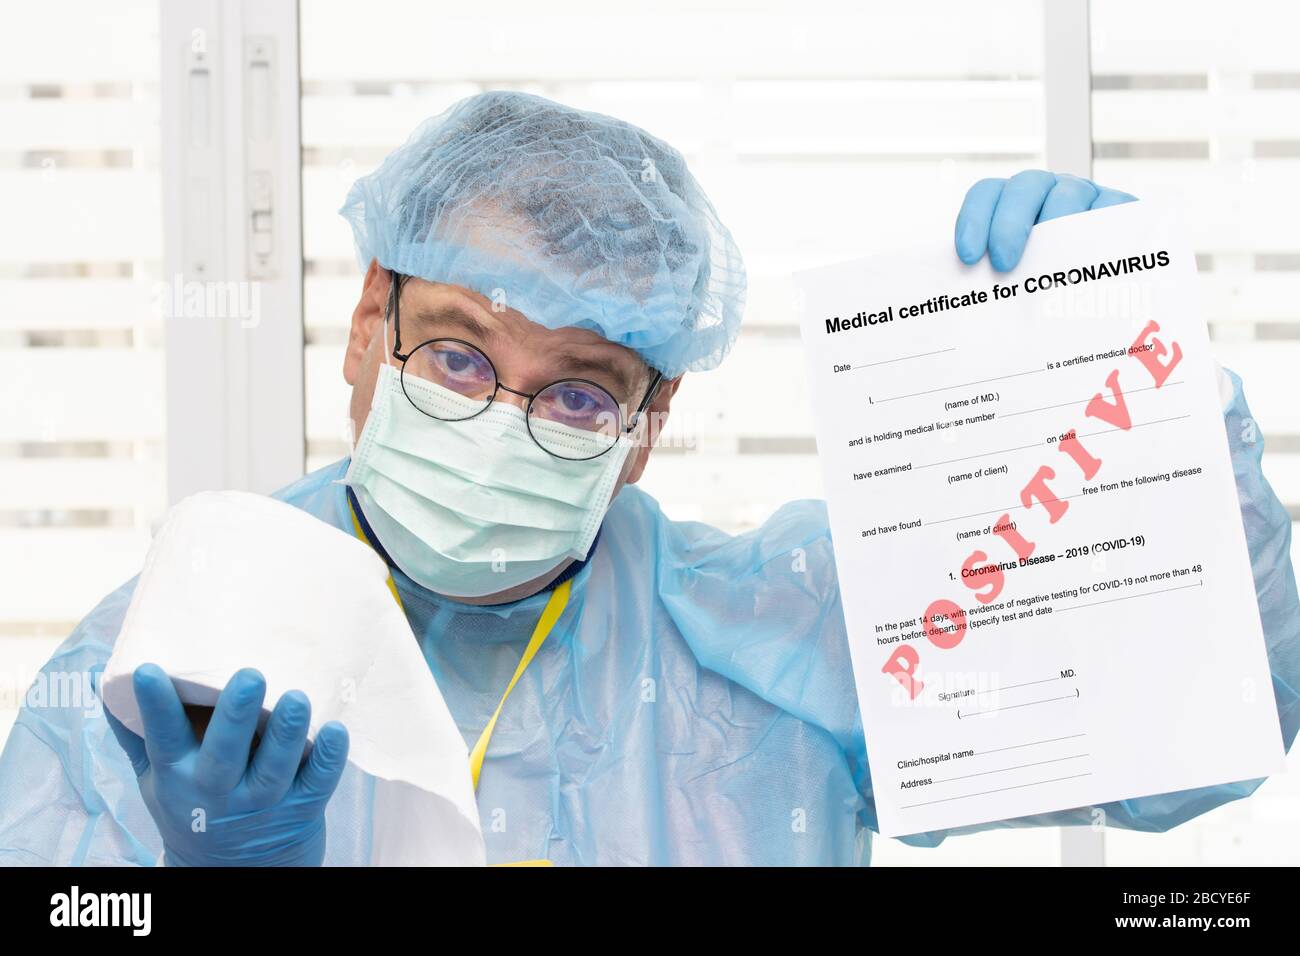 Médecin en costume de protection portant un certificat médical positif au coronavirus - covid 19 et offre du papier toilette. L'examen de laboratoire du sang Banque D'Images